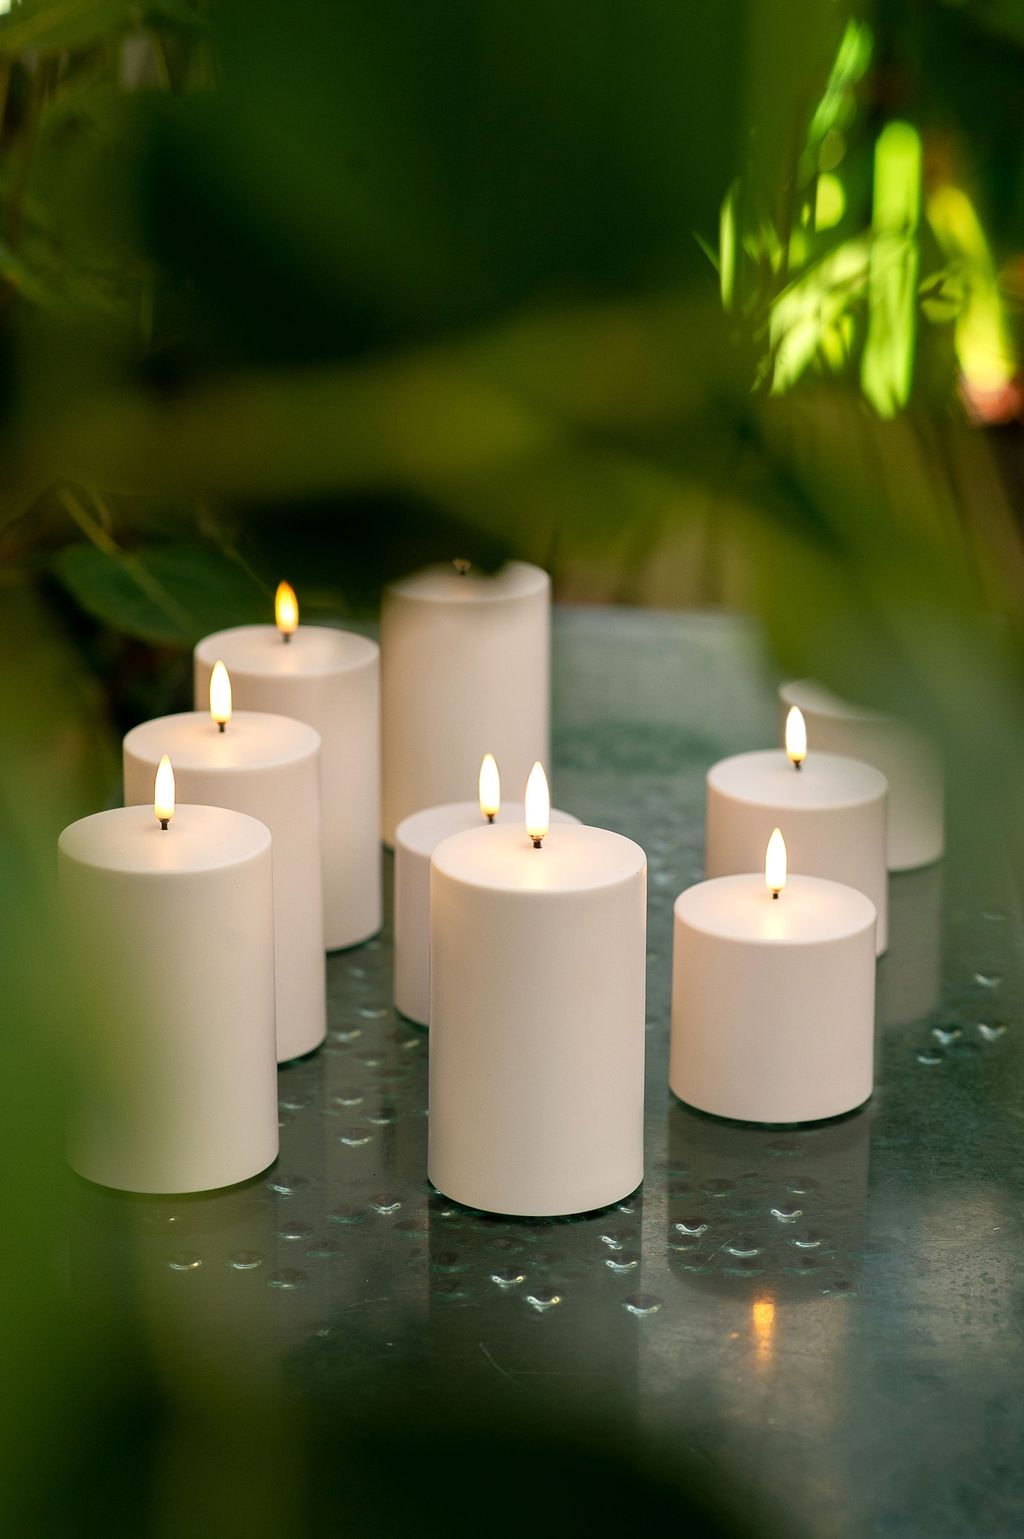 Uyuni Lighting LED Pilier Candle 3 D Flame Øx H 7,3x22 cm, ivoire